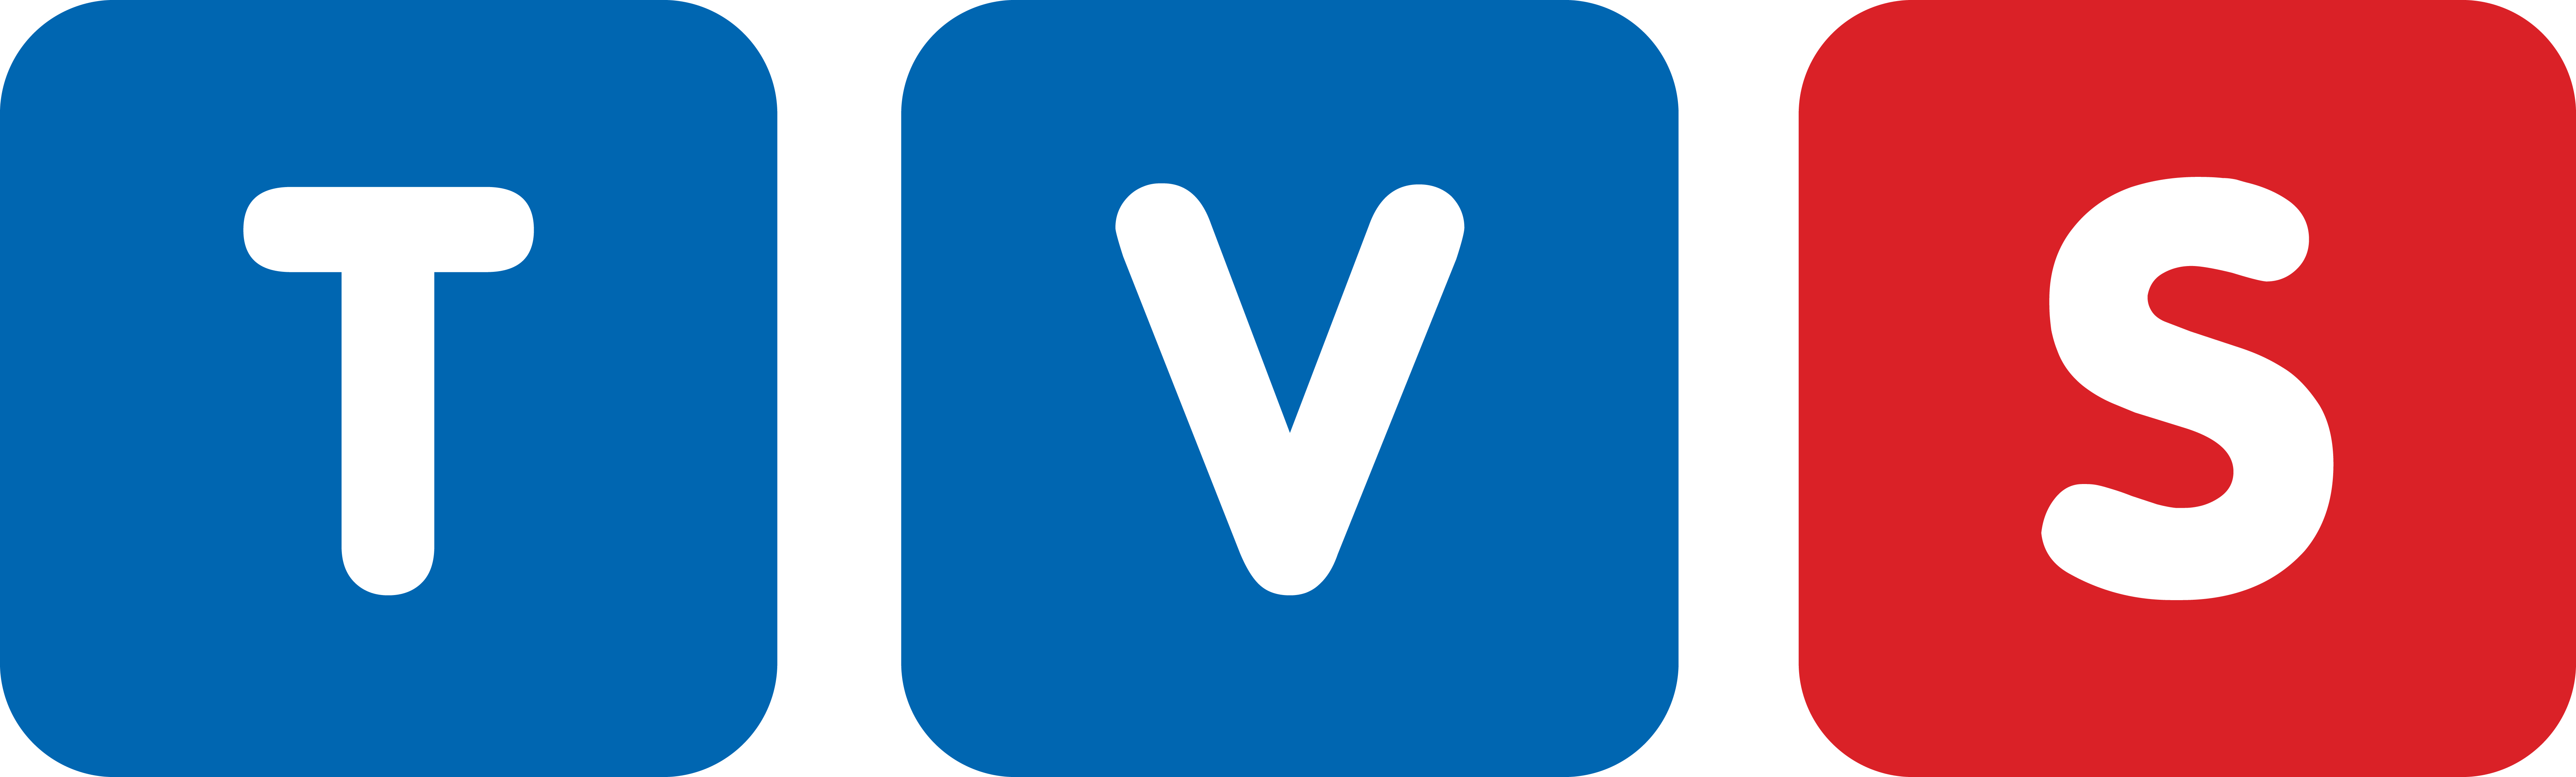 tvs_logo.jpg